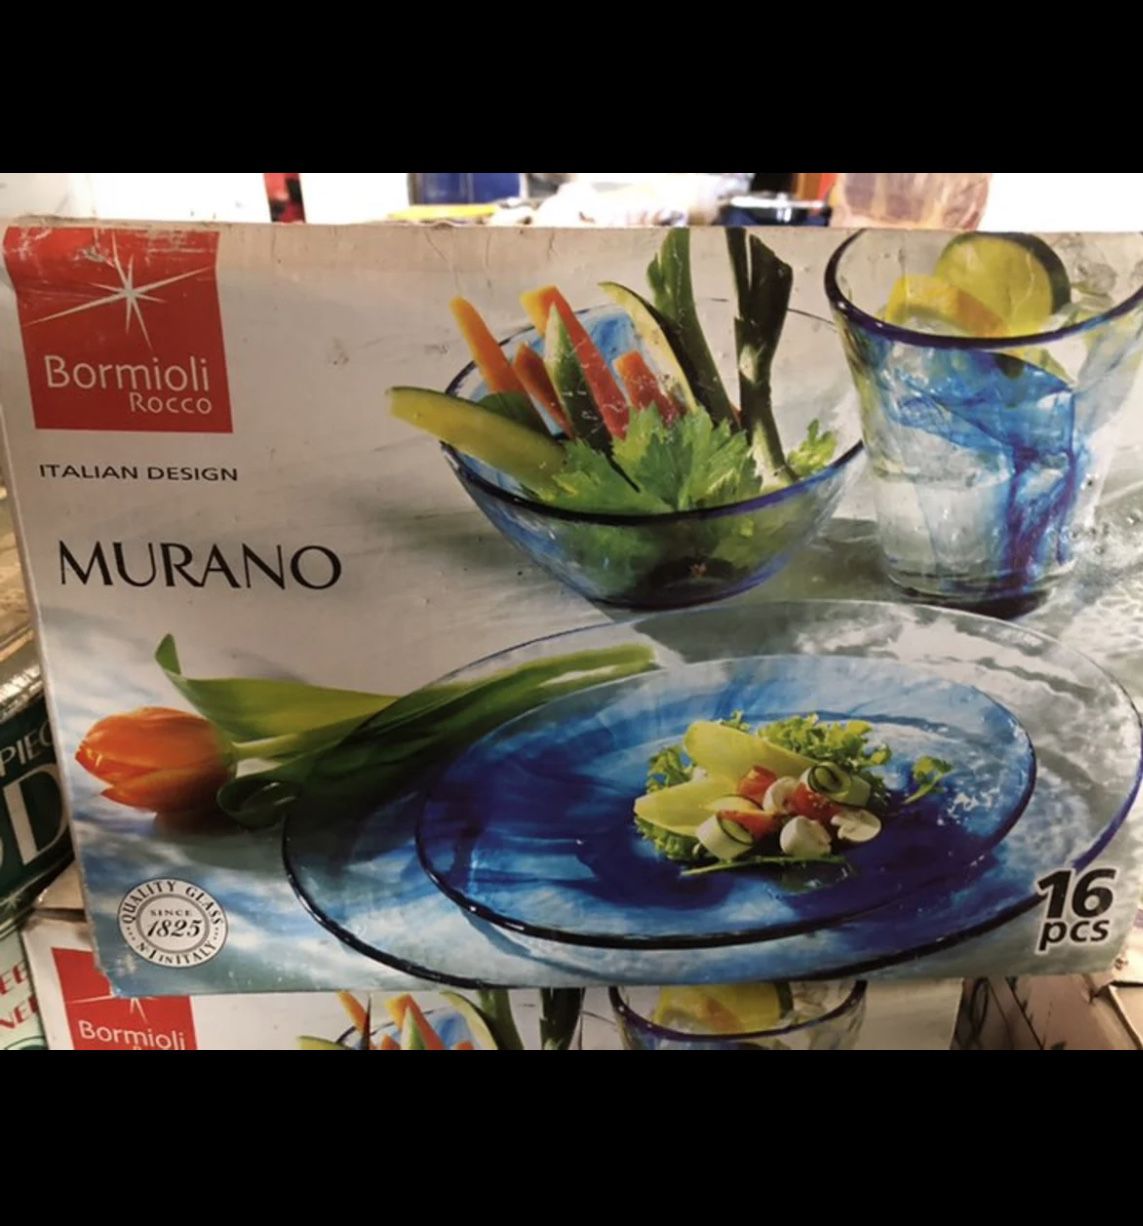 Birmioli Rocco Murano Italian Dish Set